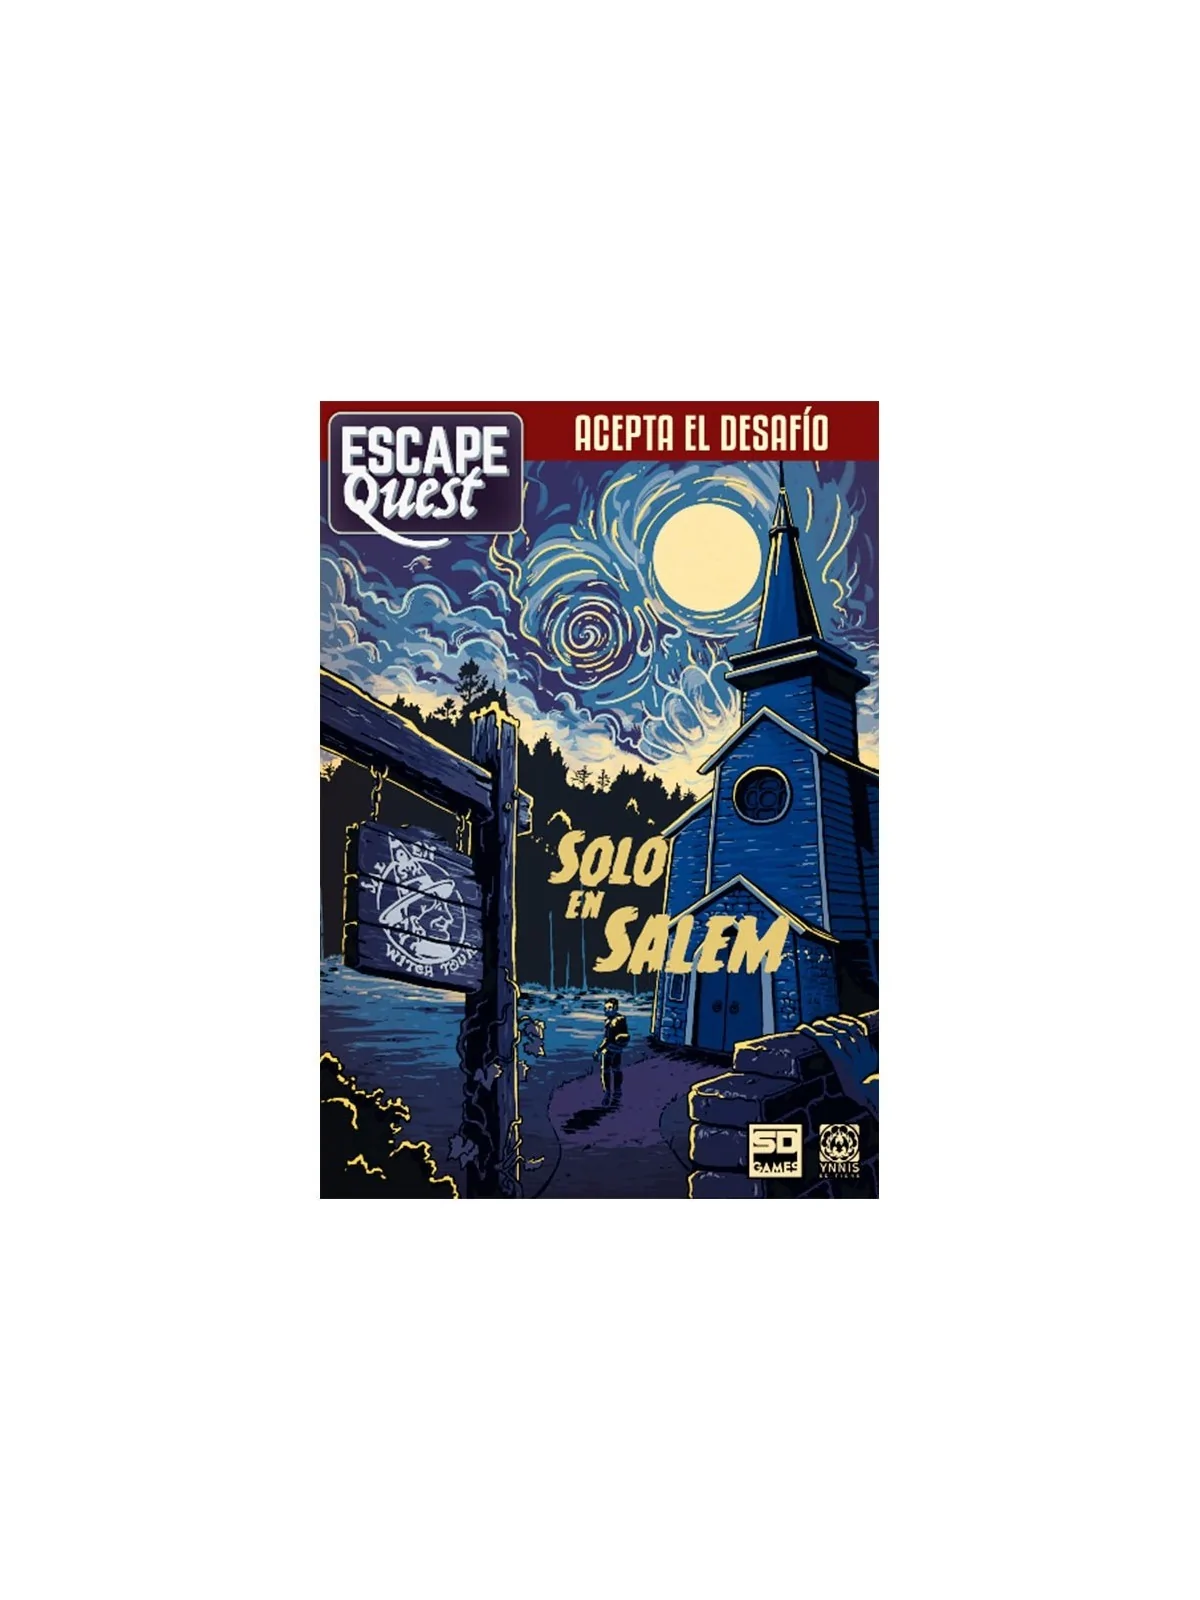 Comprar Escape Quest - Solo en Salem barato al mejor precio 15,65 € de